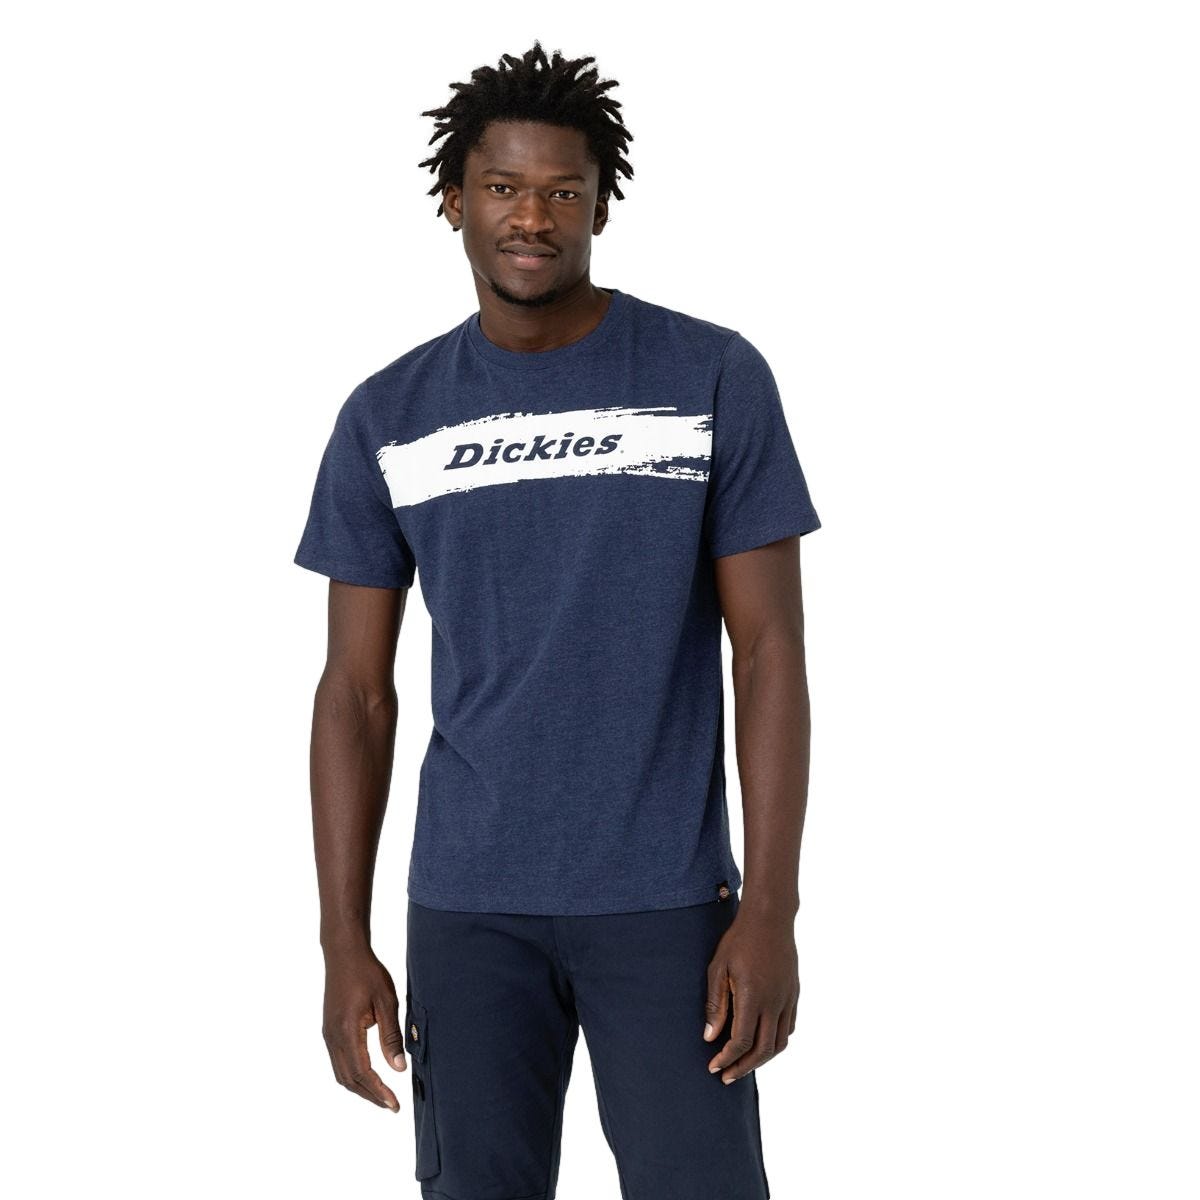 T-shirt à manches courtes pour homme Stanton bleu marine - Dickies - Taille XL 0